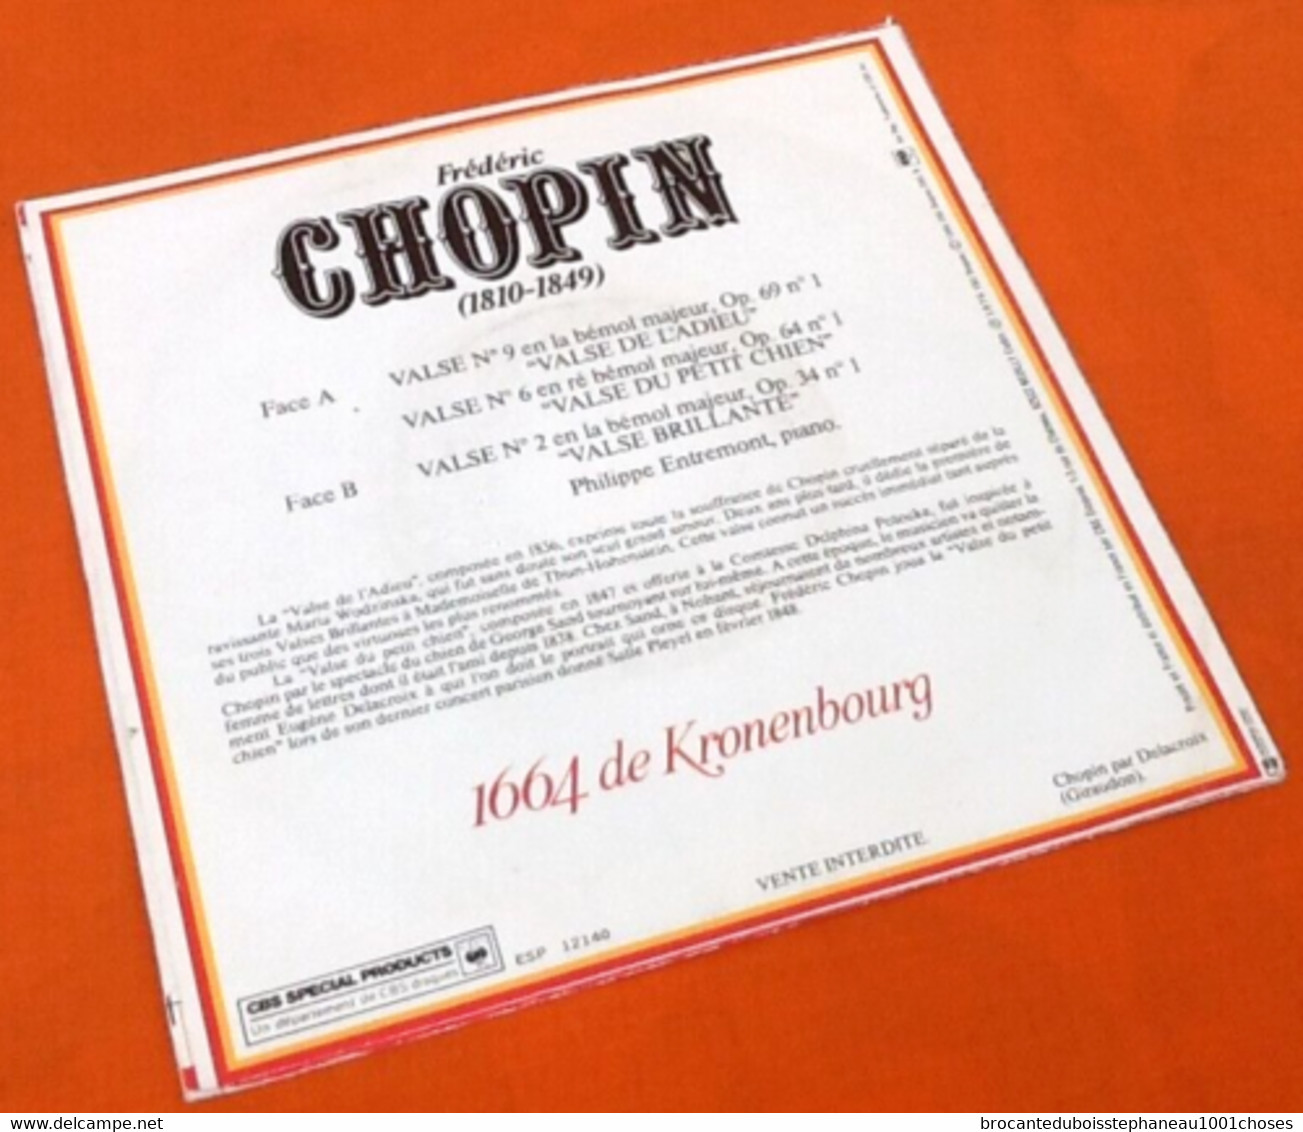 Vinyle 45 Tours  Frédéric  Chopin / Philippe Entremont  Valses  (1976) - Classique